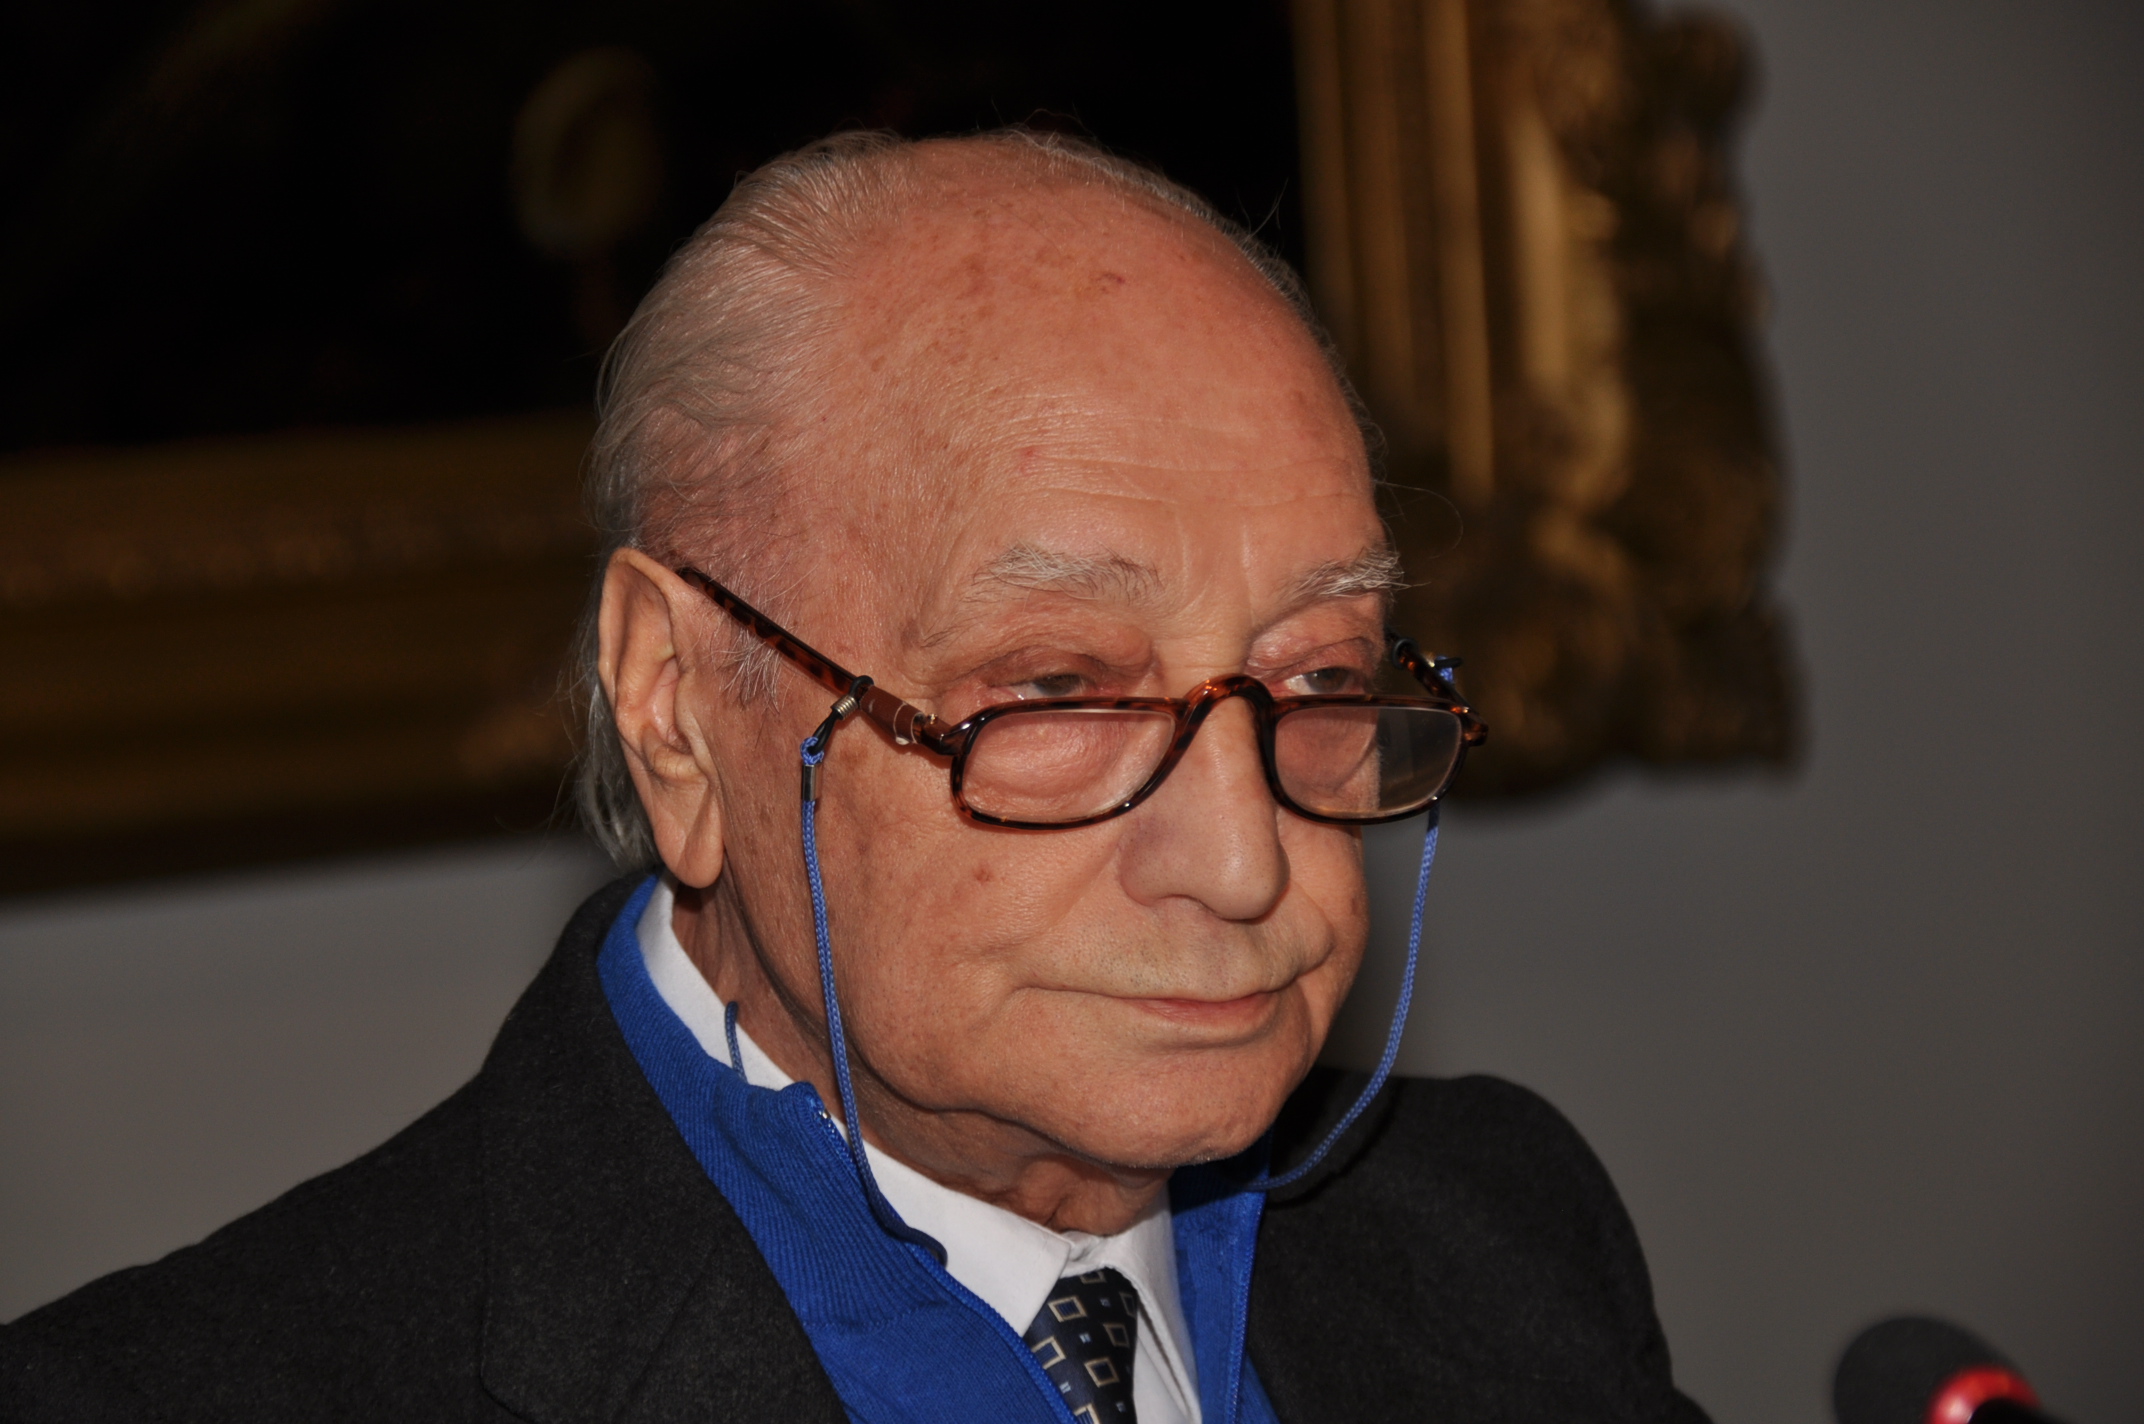 La scomparsa del professore Raffaele Matarazzo